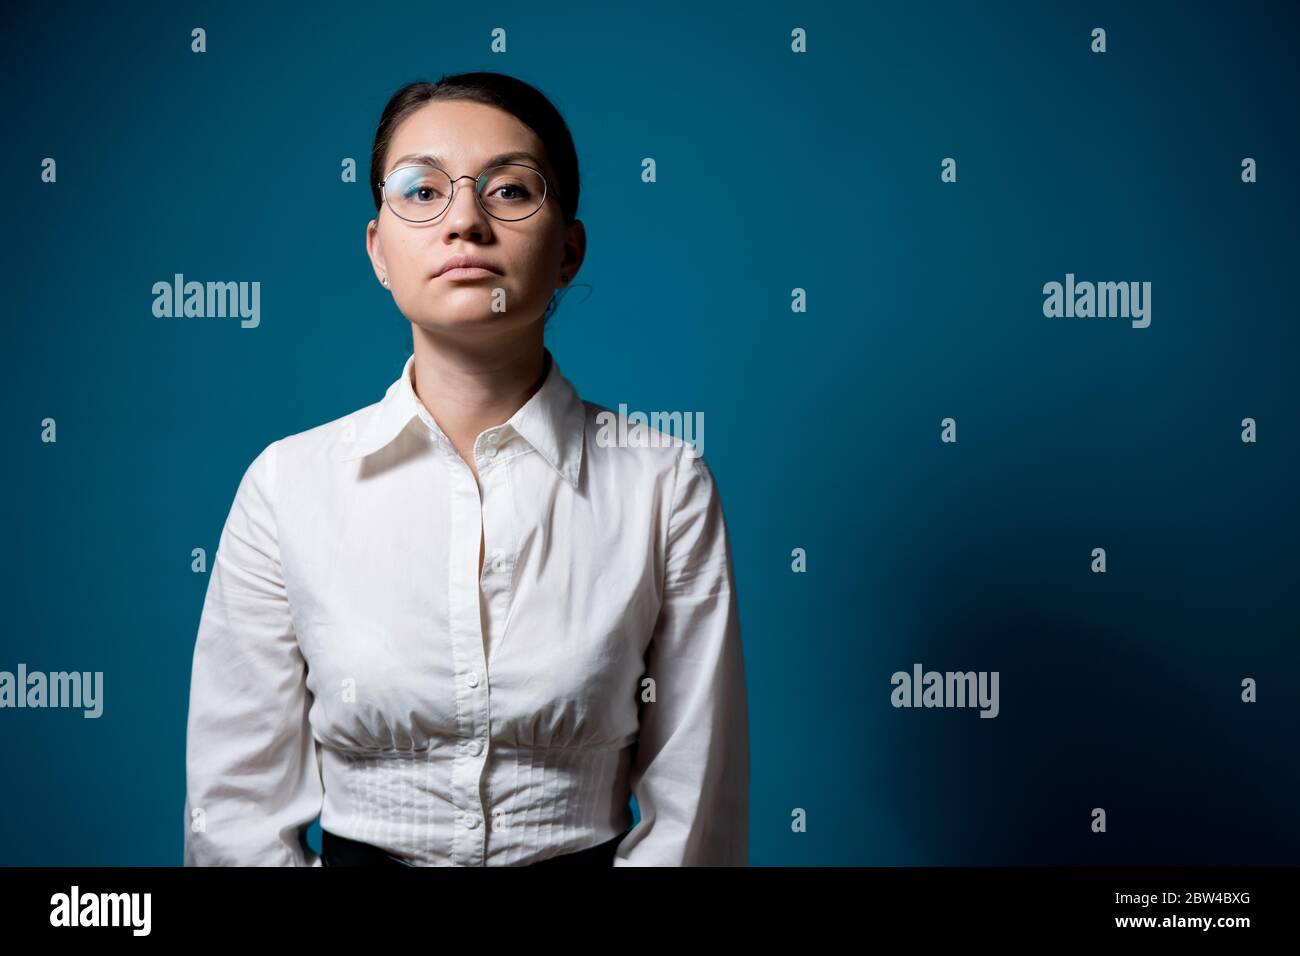 une fille avec des lunettes et une chemise blanche ne s'exprime pas toutes les émotions Banque D'Images